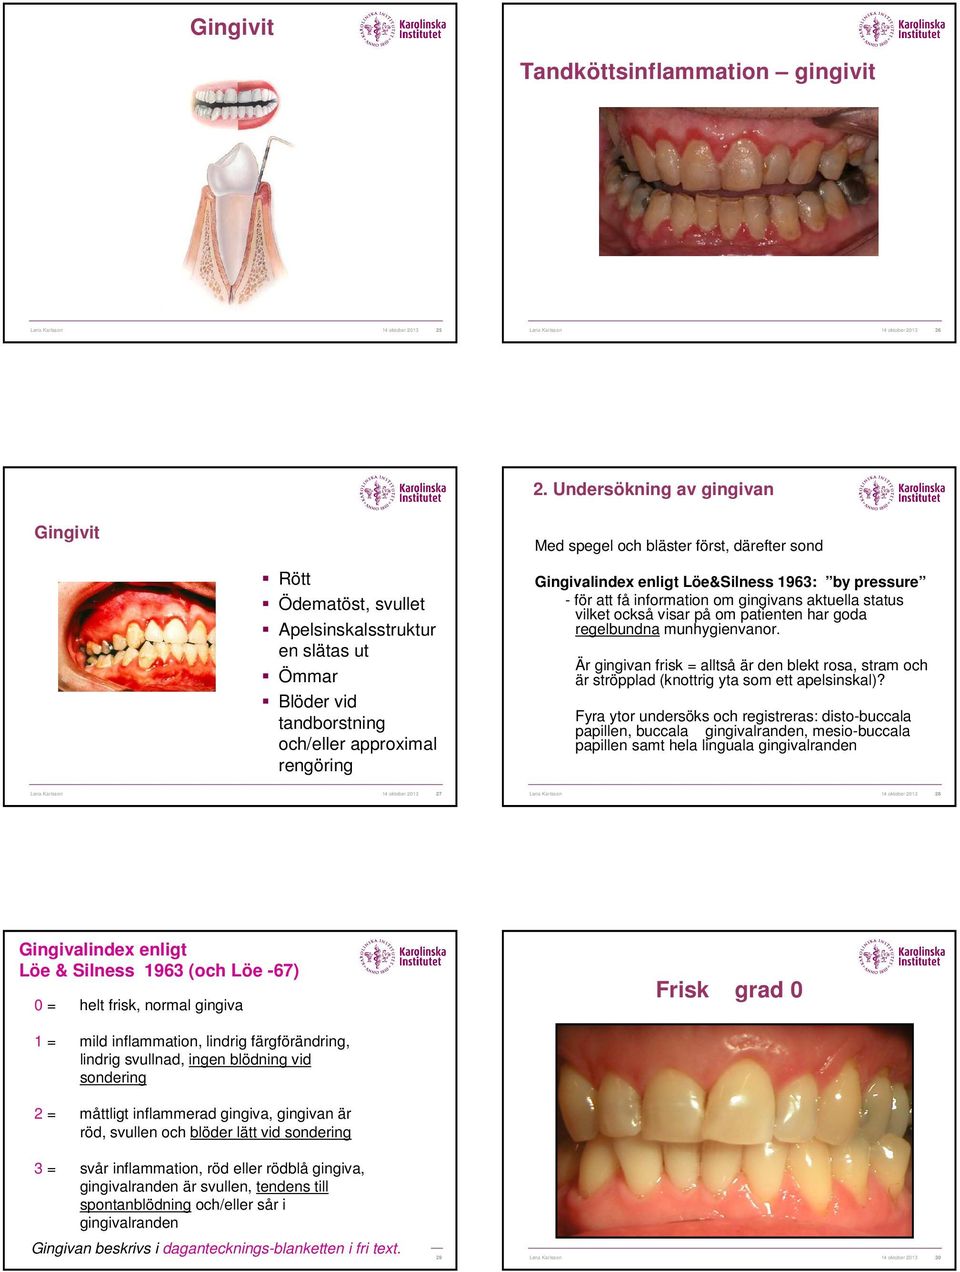 Gingivalindex enligt Löe&Silness 1963: by pressure - för att få information om gingivans aktuella status vilket också visar på om patienten har goda regelbundna munhygienvanor.